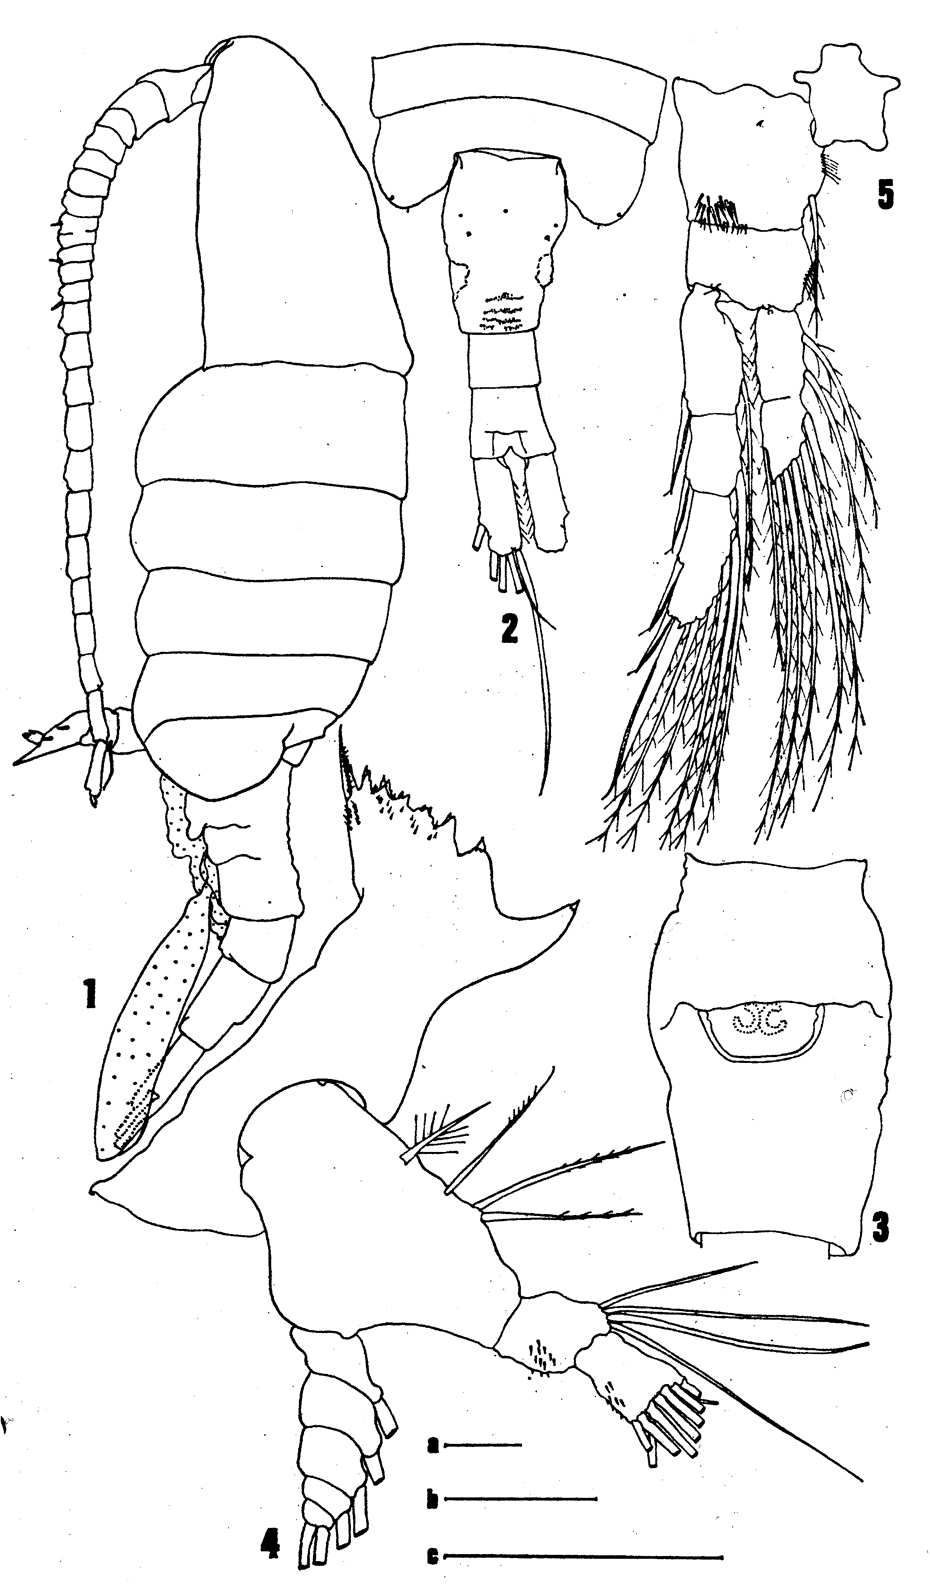 Espce Eurytemora richingsi - Planche 1 de figures morphologiques